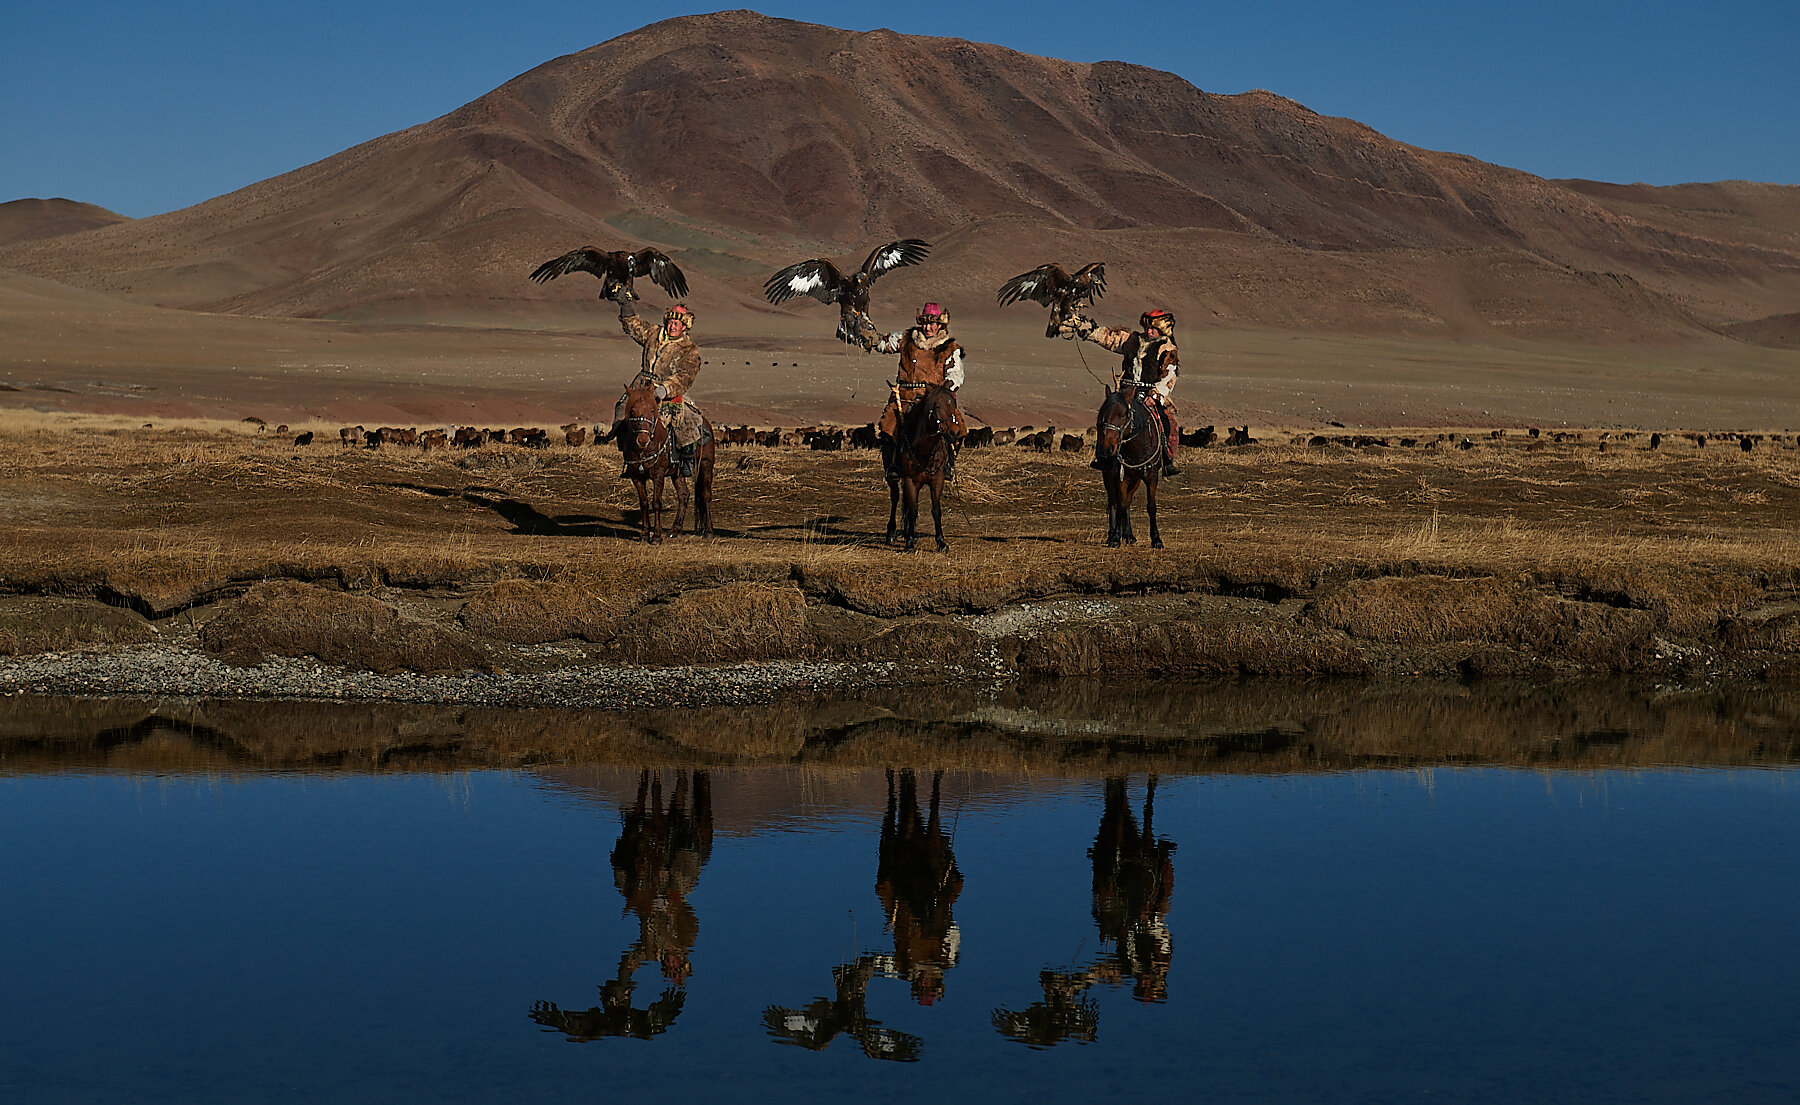 Bashakhan, Tileyjan and Karibek, Kazakh eagle hunters